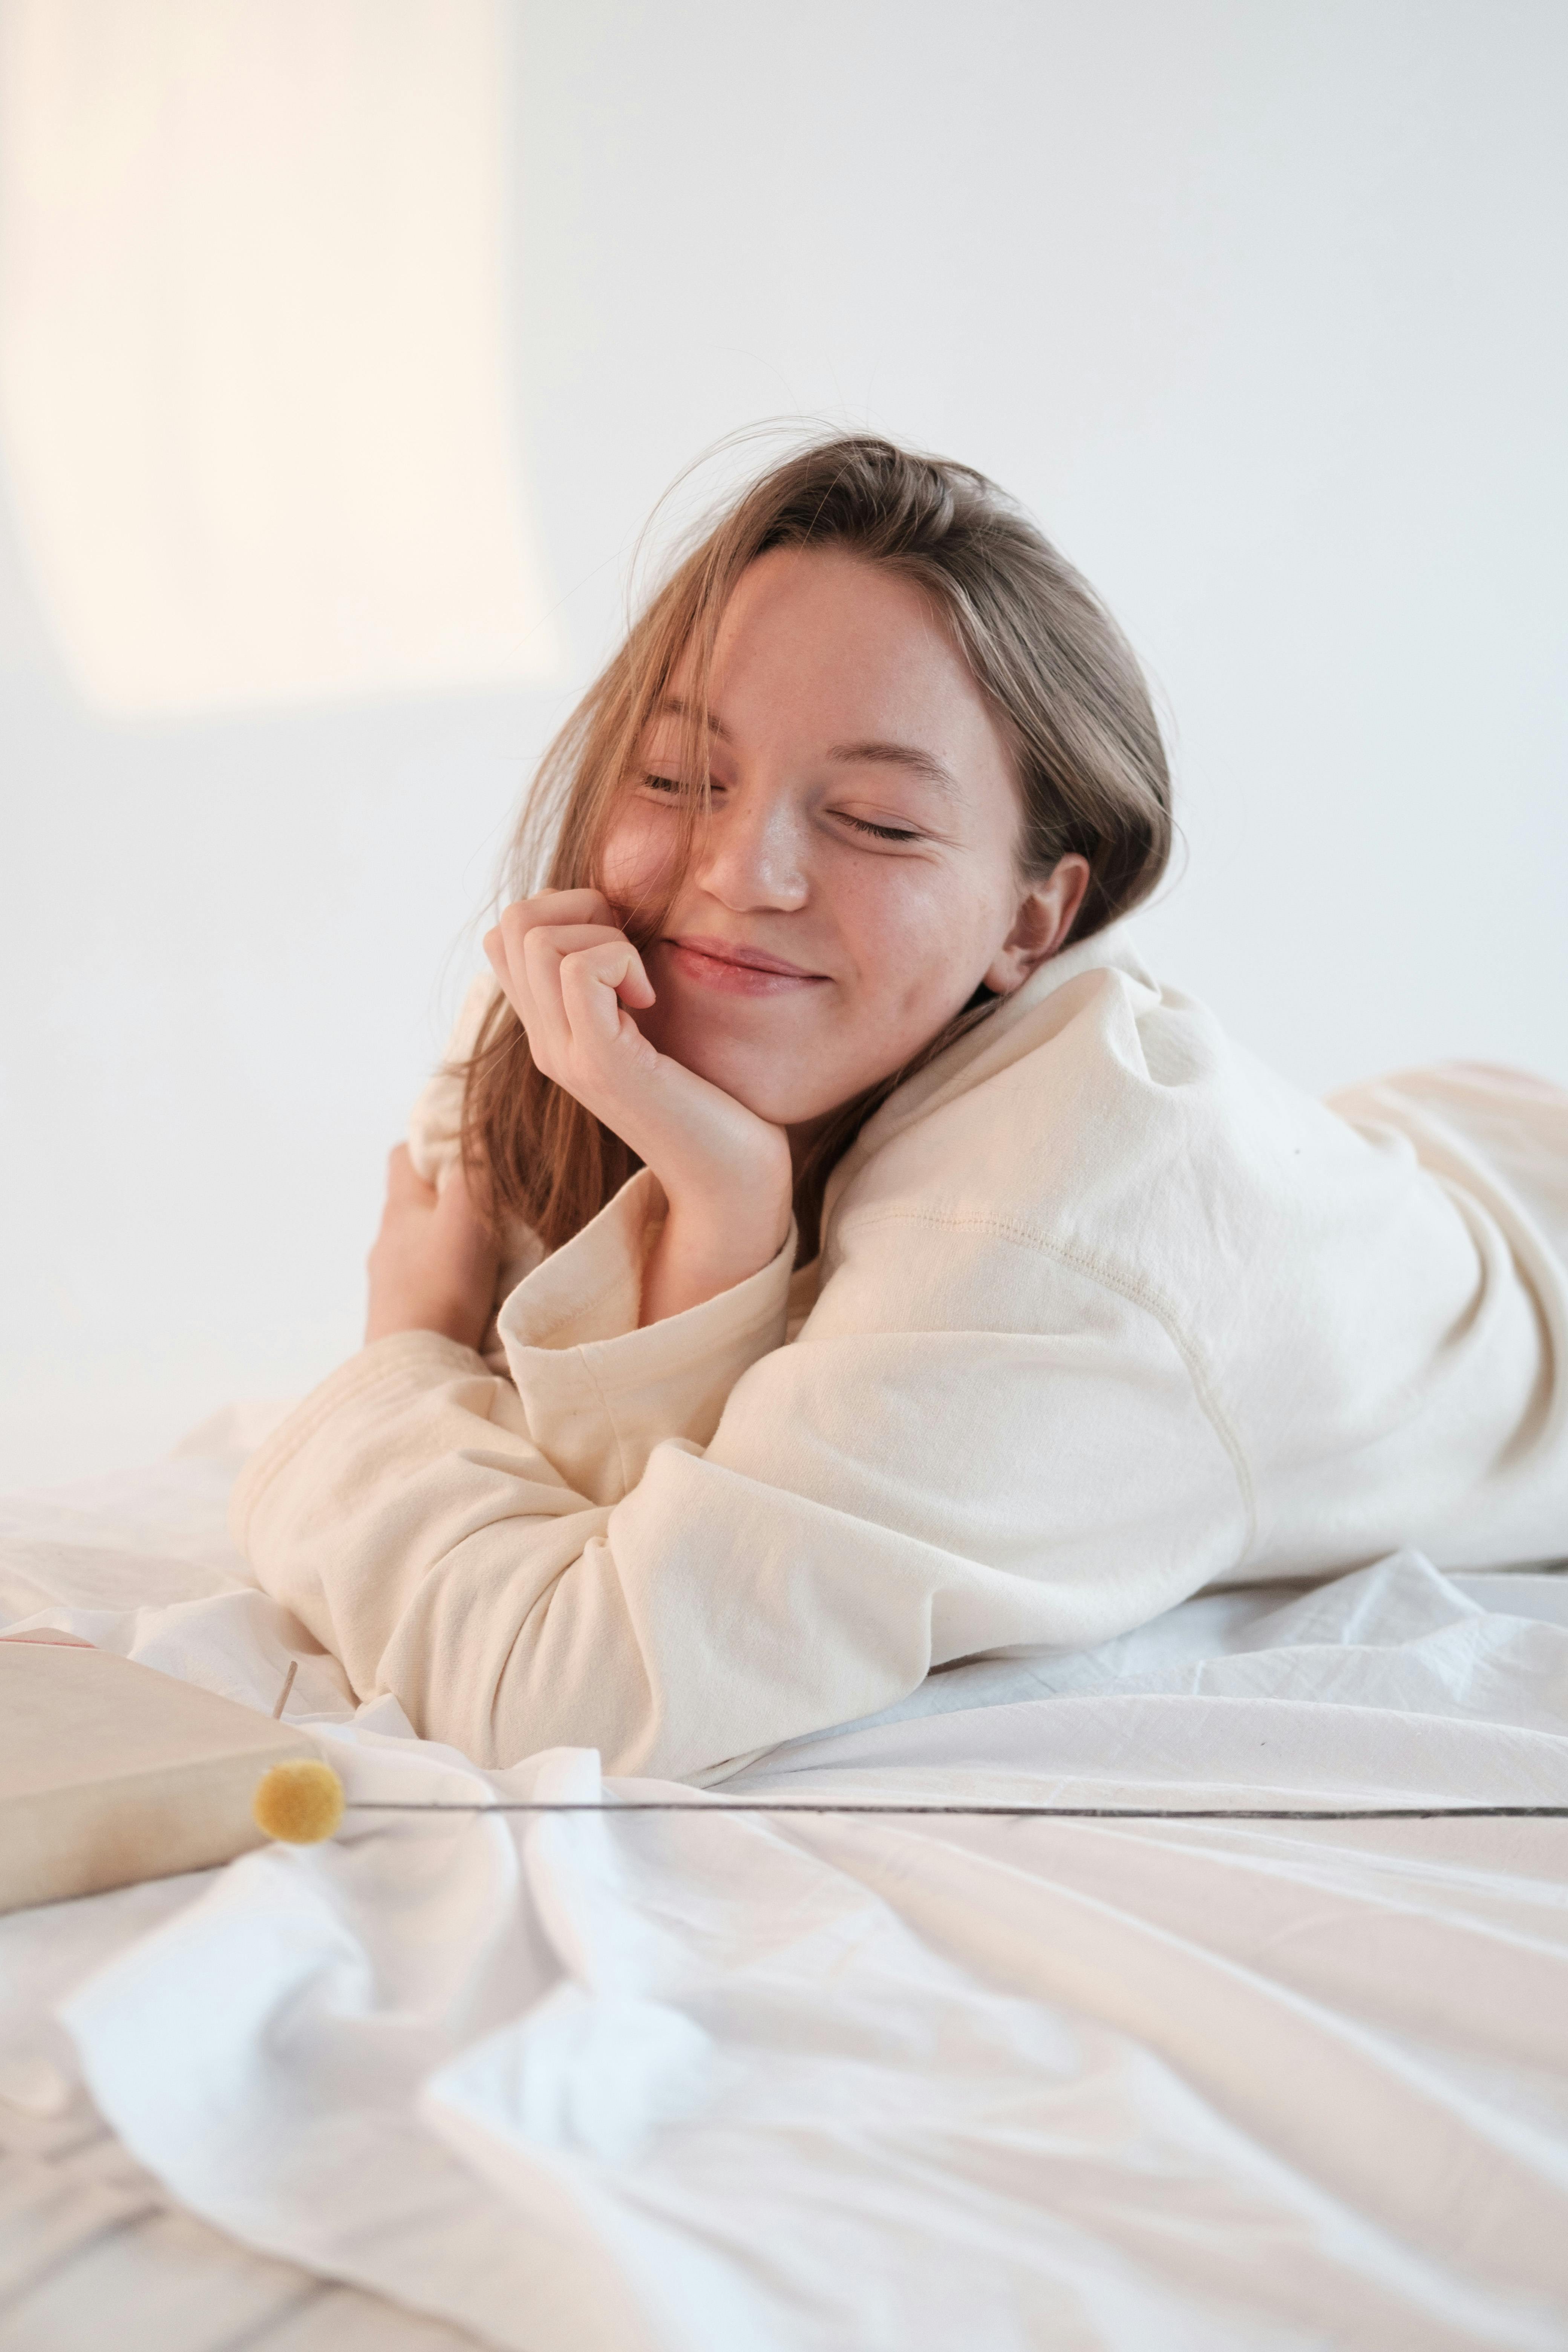 Una mujer feliz tumbada en una cama | Fuente: Pexels